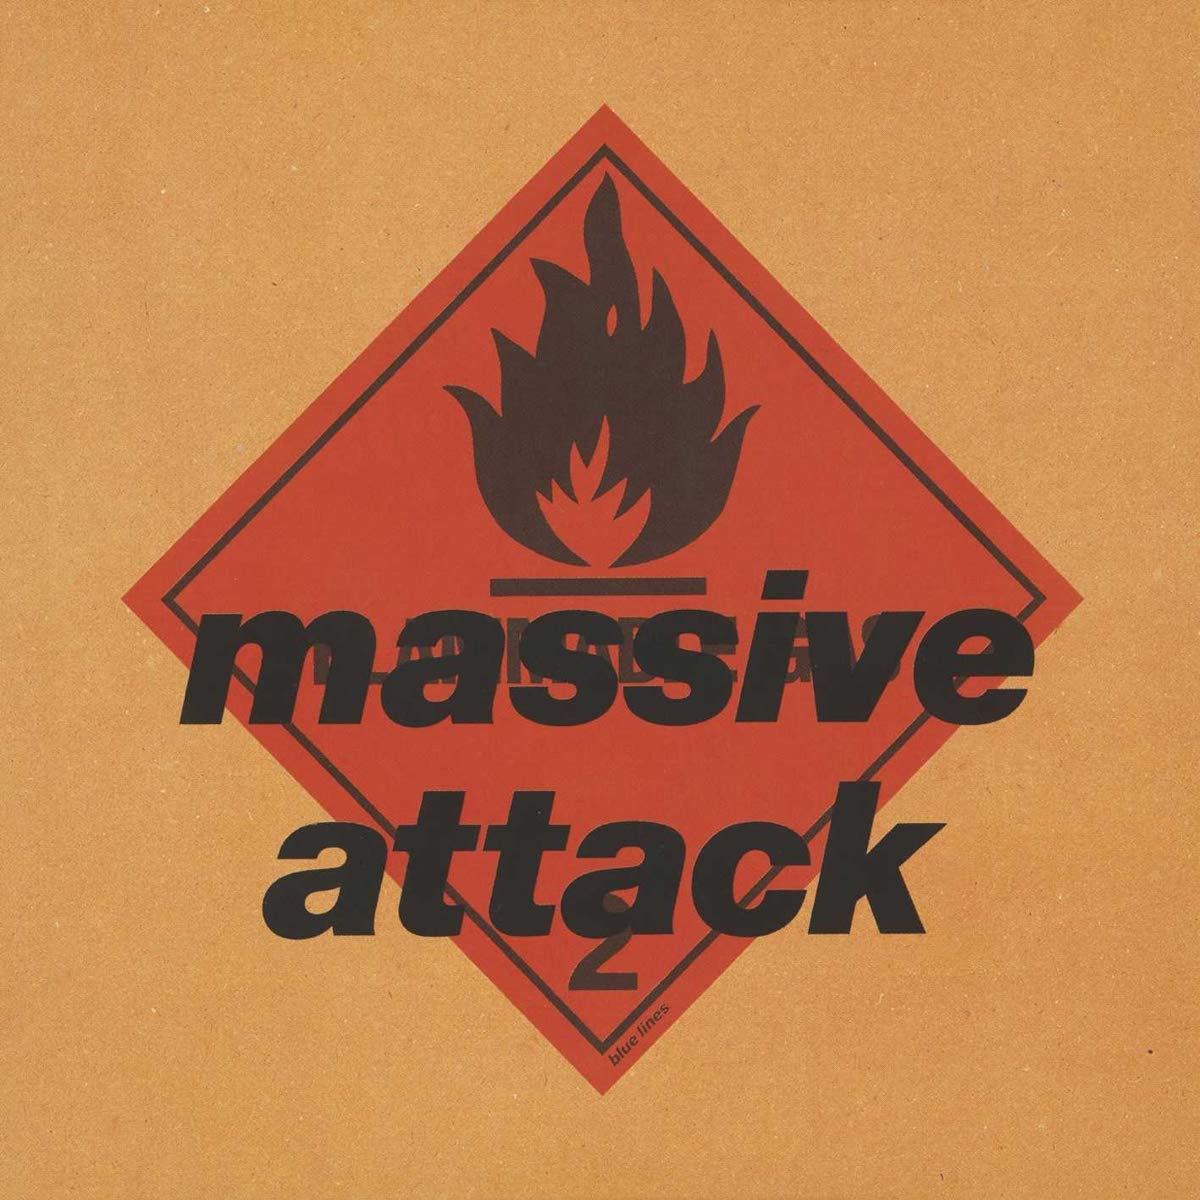 Blue Lines, Massive Attack